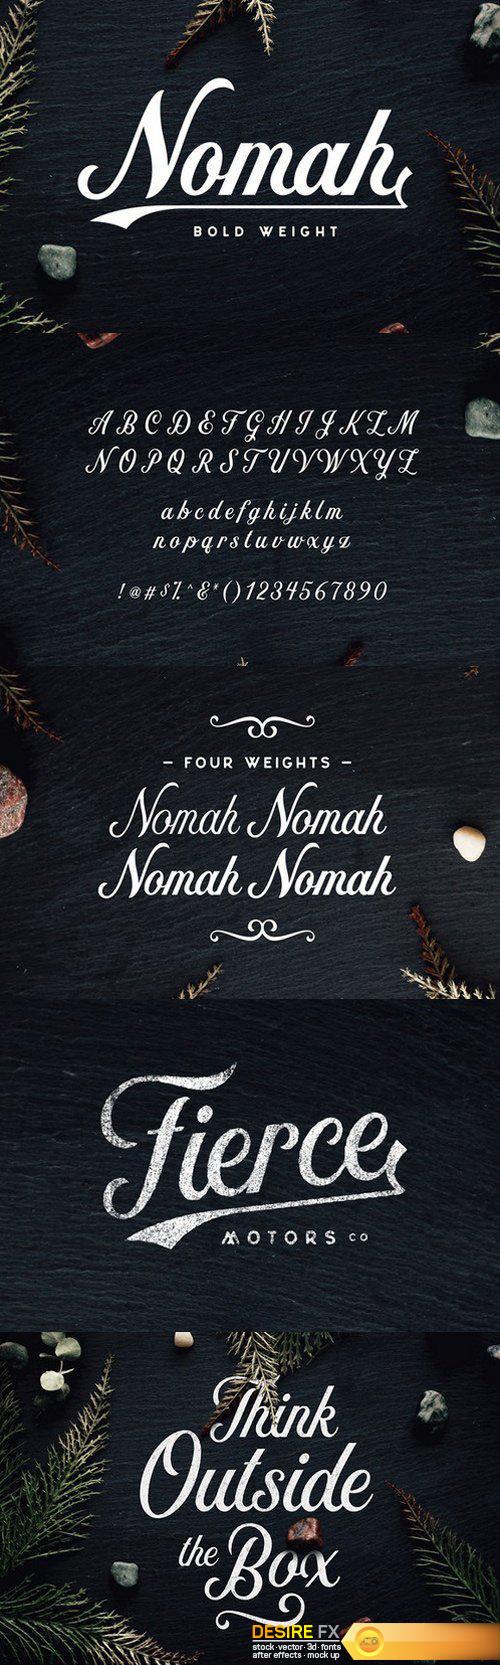 CM – Nomah Bold Script Font 566255